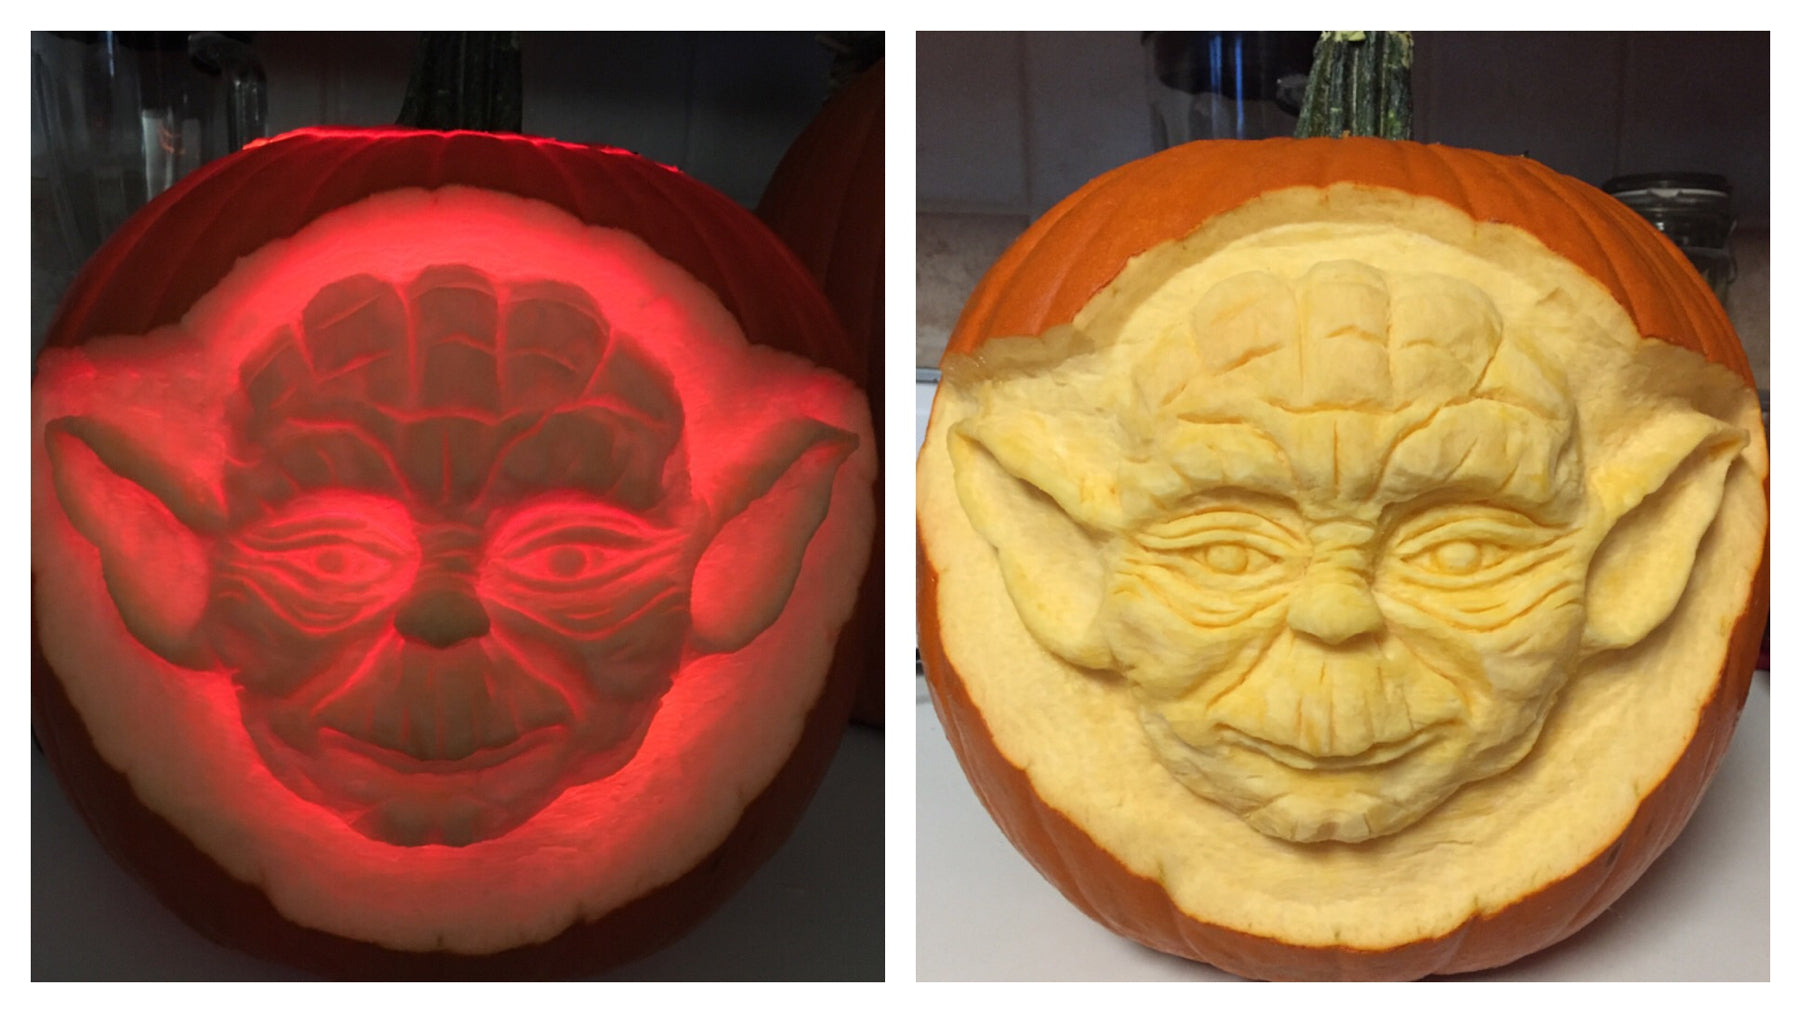 The Yoda Pumpkin